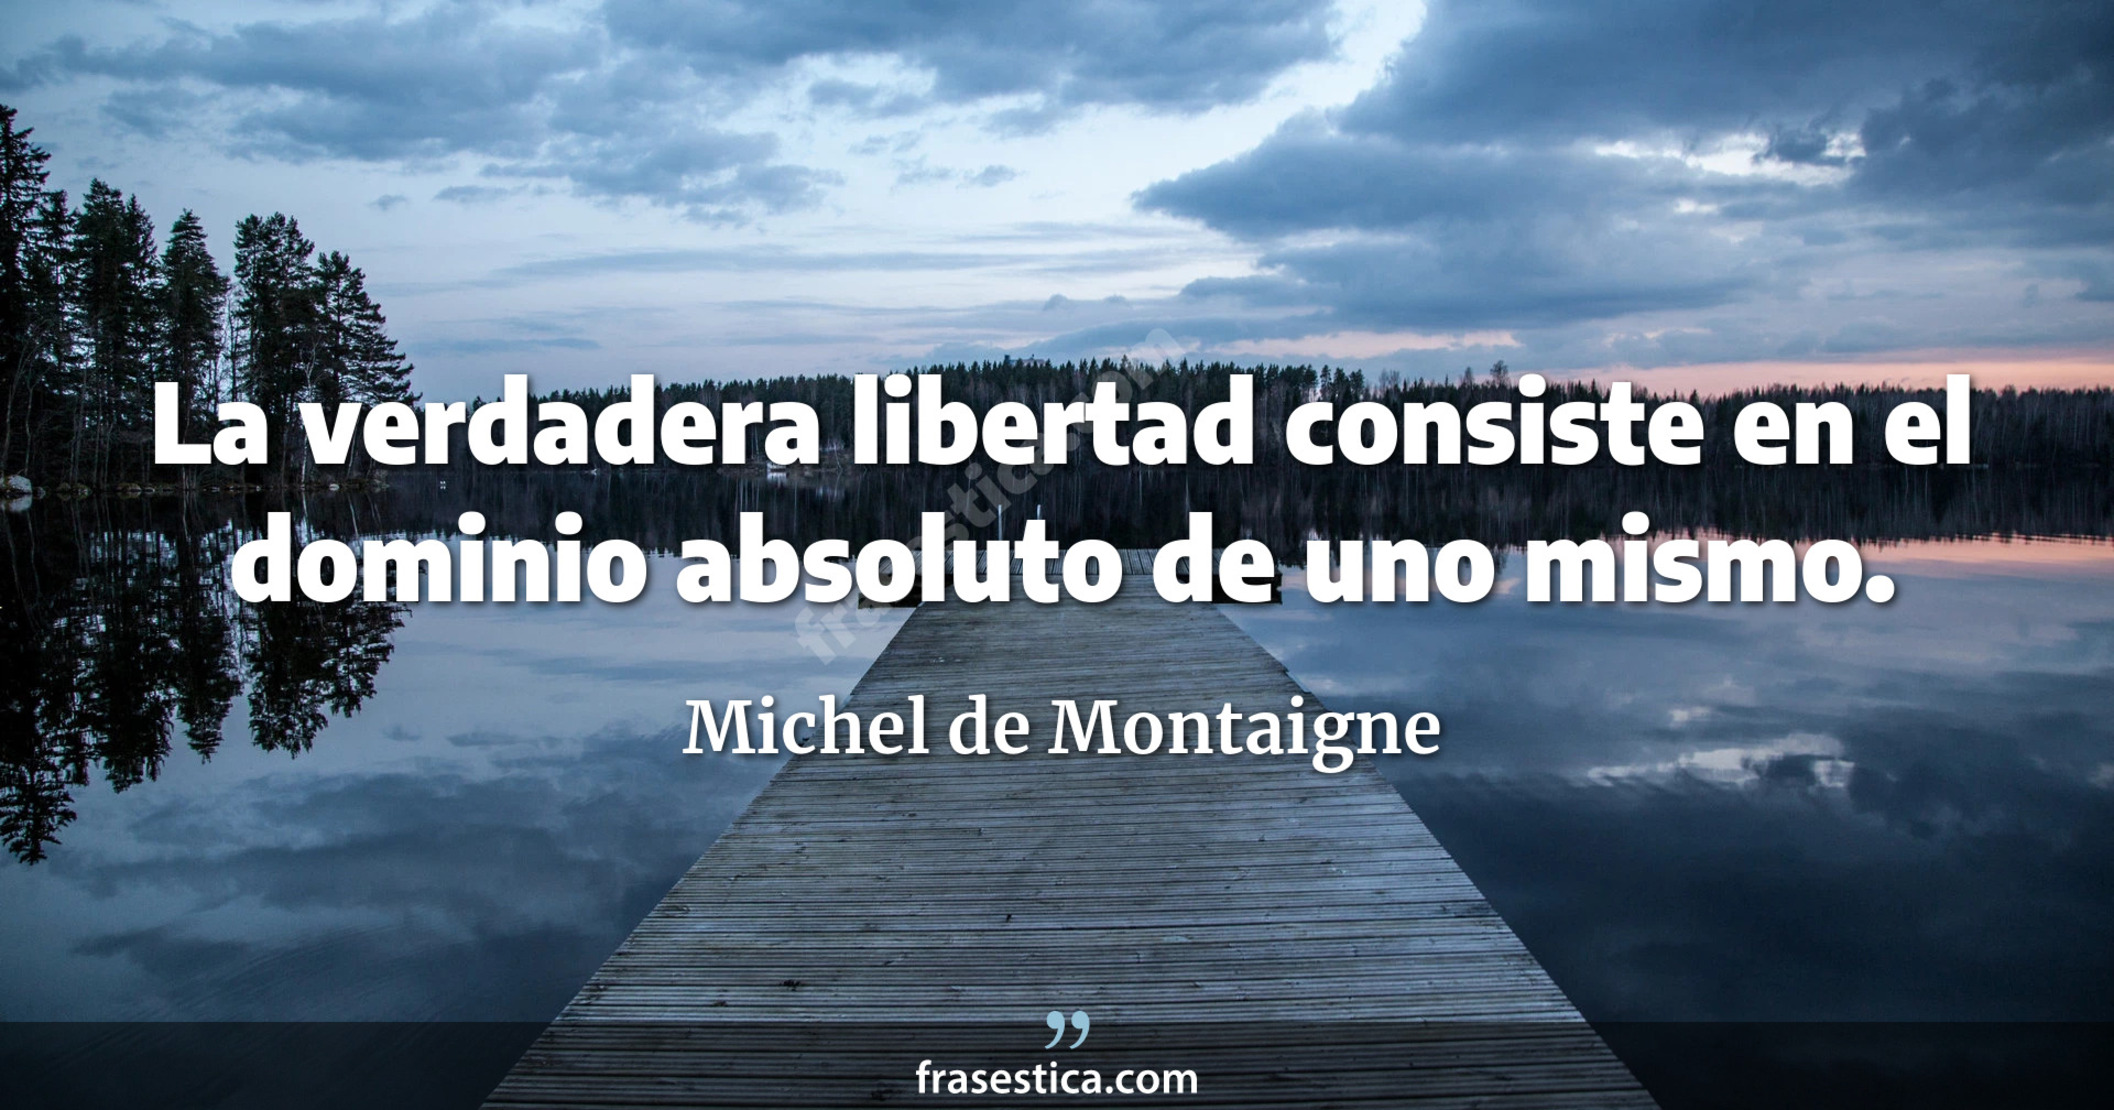 La verdadera libertad consiste en el dominio absoluto de uno mismo. - Michel de Montaigne